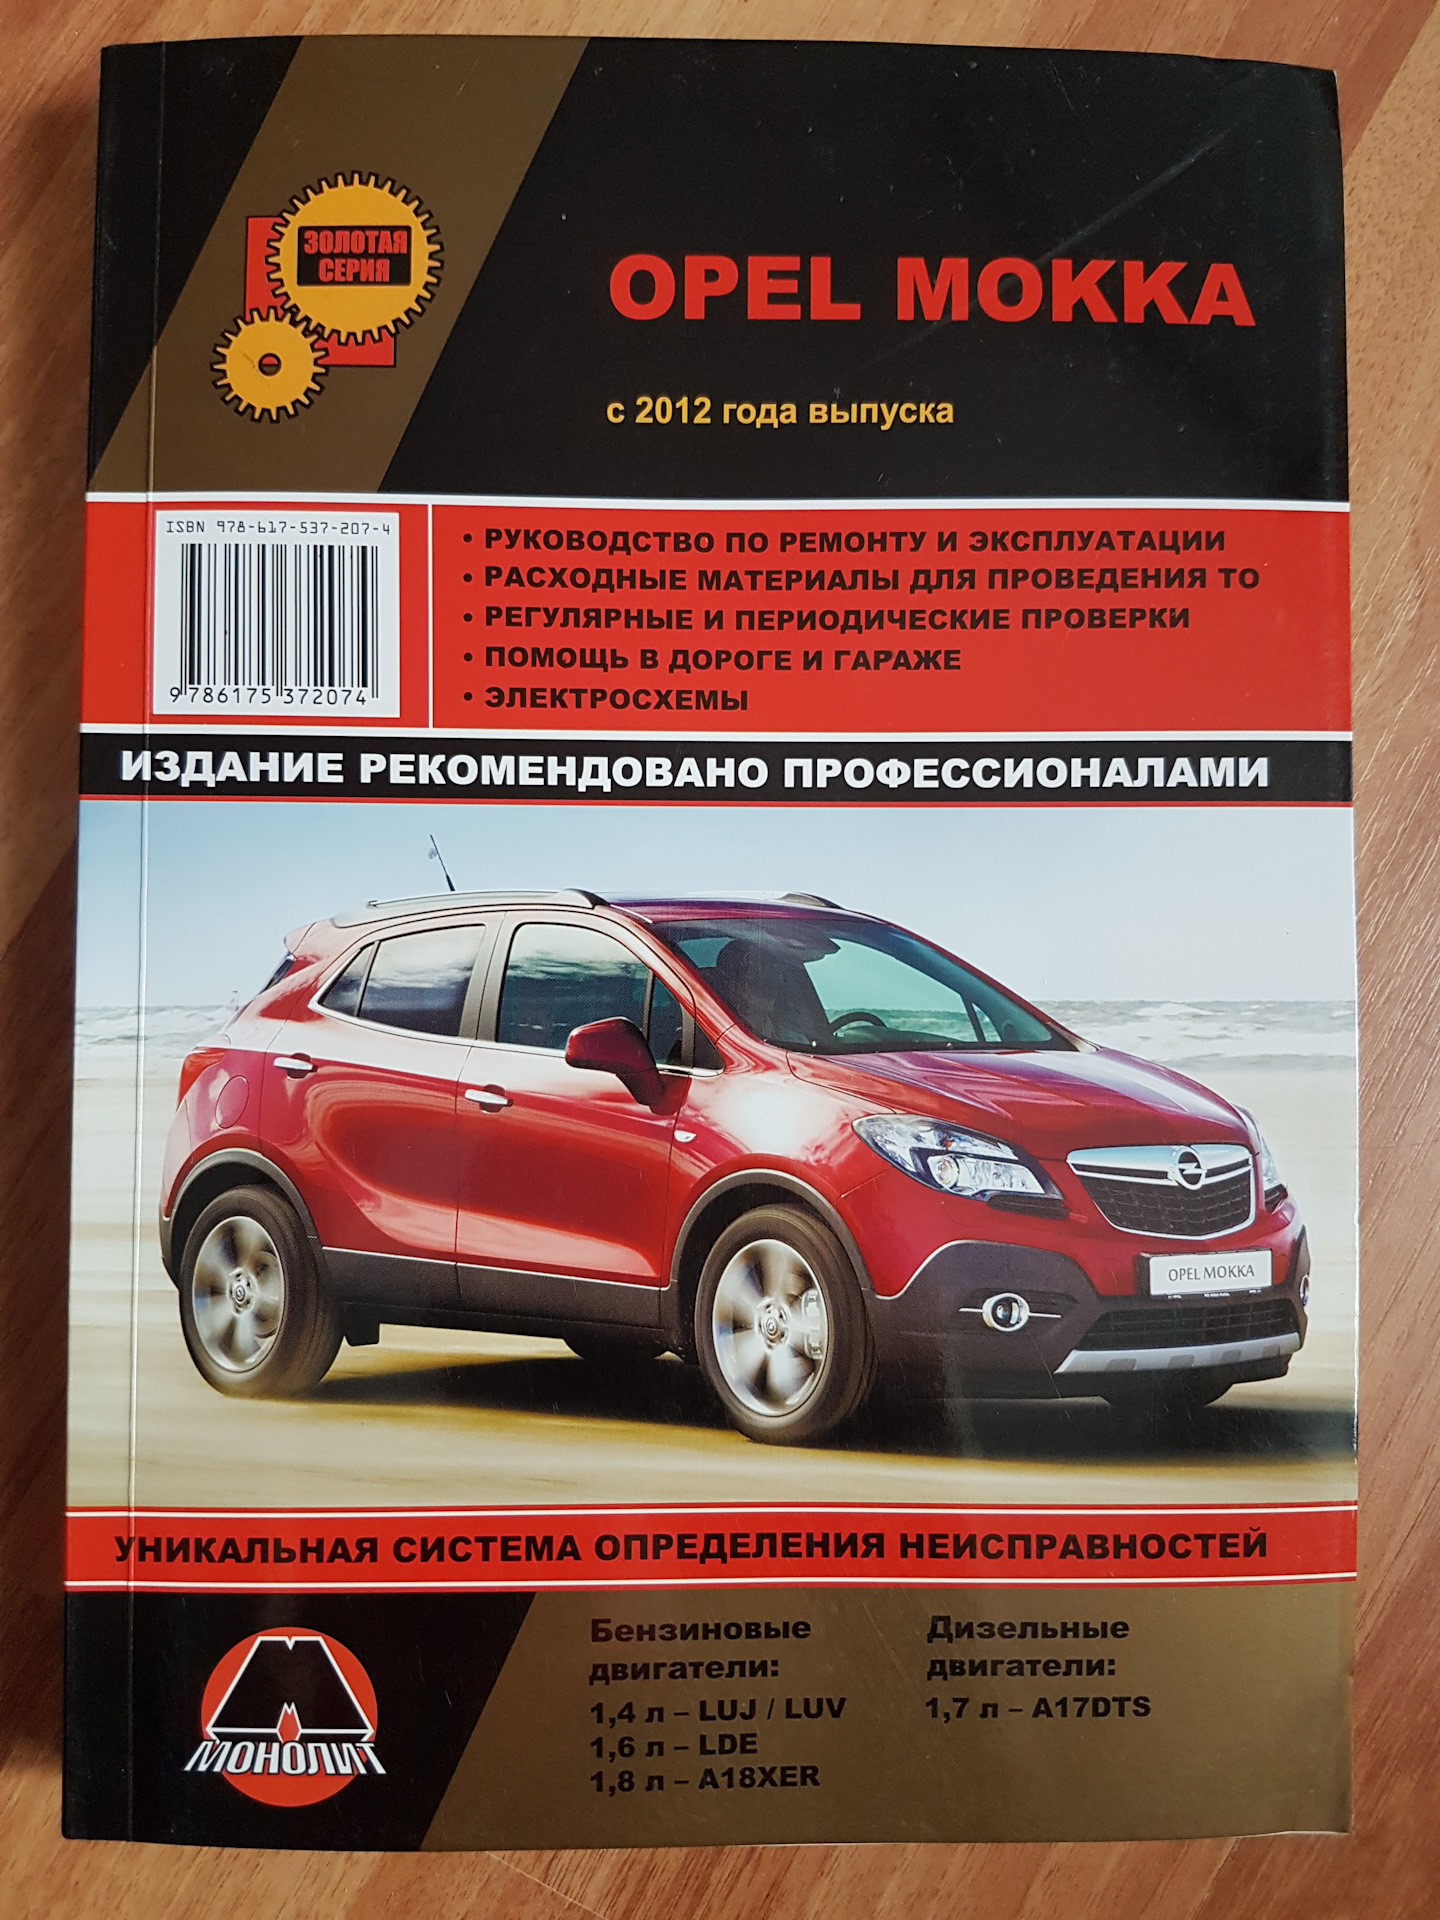 Opel эксплуатация. Книга по обслуживанию и ремонту автомобиля Опель Мокка. Руководство по ремонту Опель Мокка. Опель Мокка инструкция по ремонту. Руководство эксплуатации автомобиля.